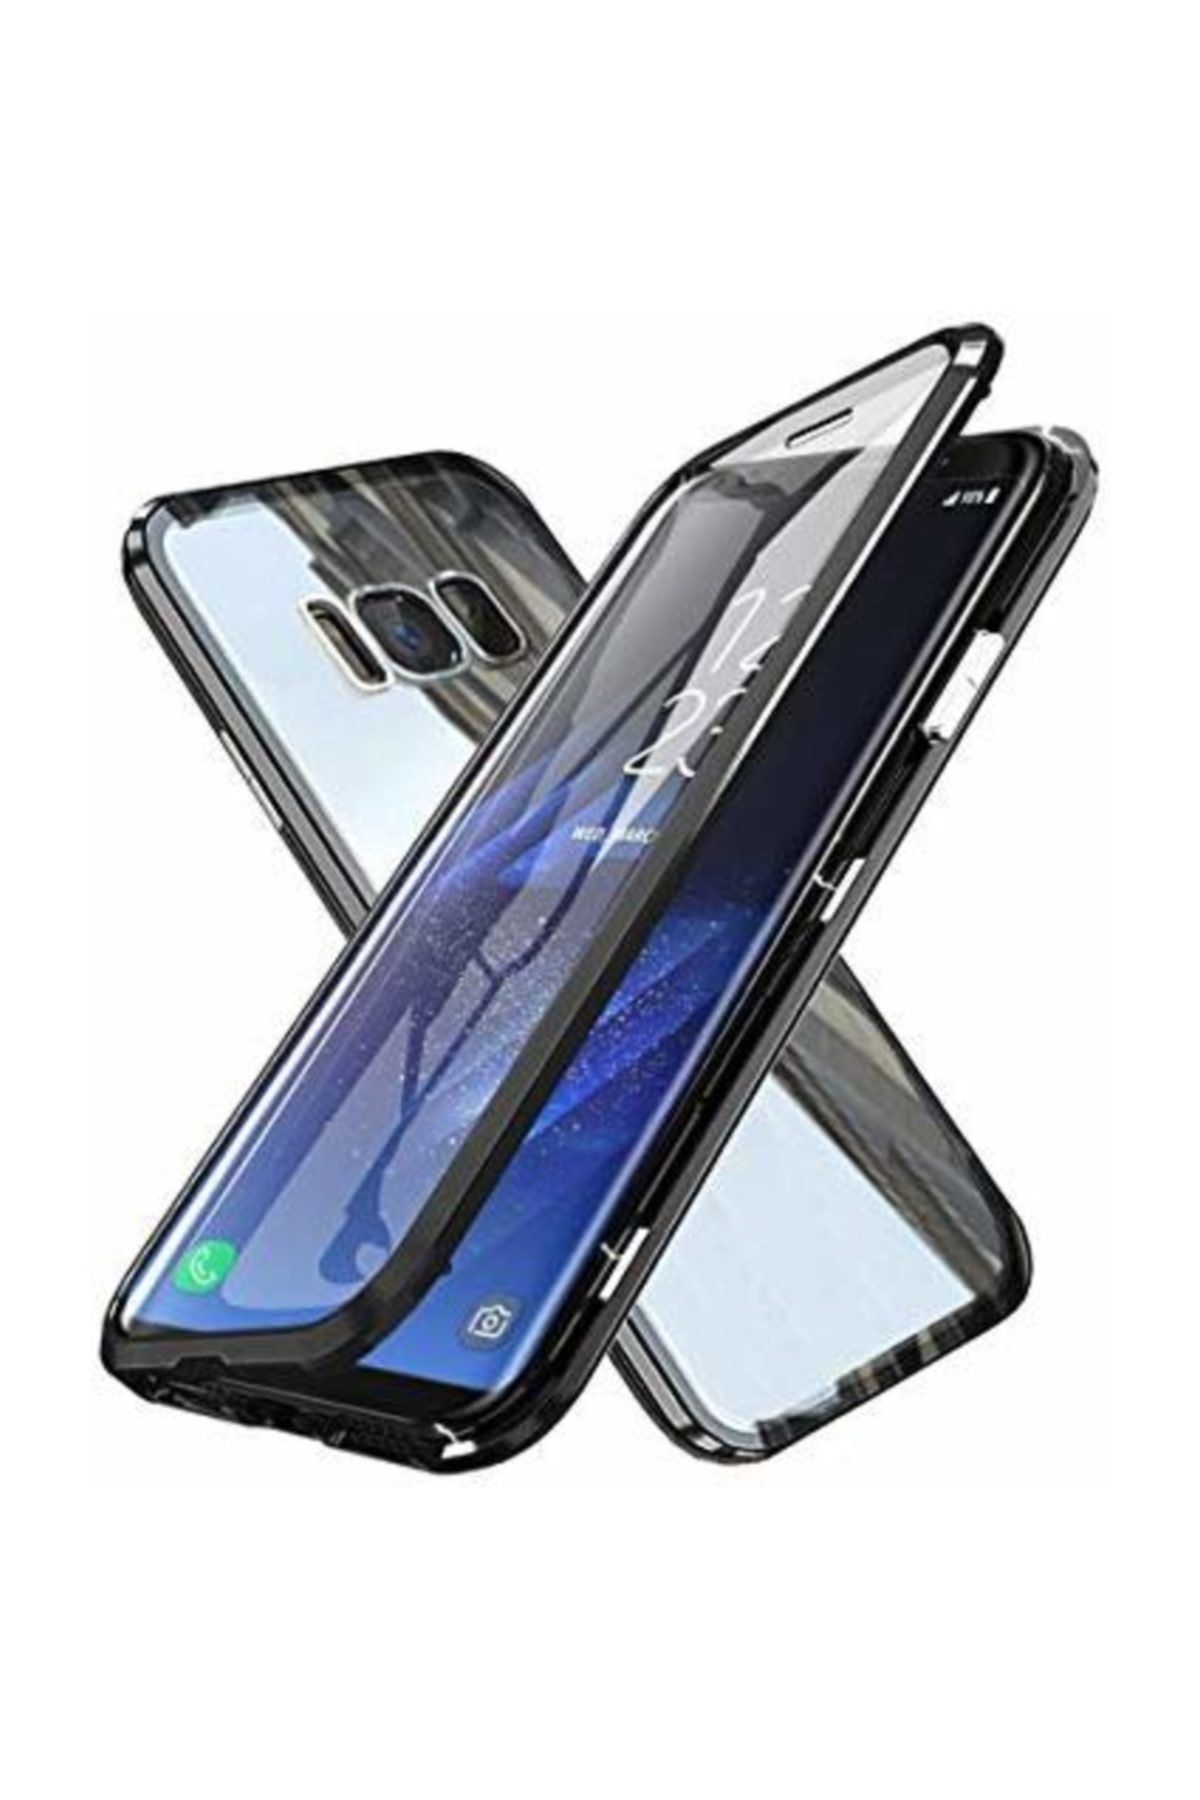 FLOWSBERRY Samsung Galaxy S8 + Plus 360 Manyetik Kapaklı Ön Arka Cam Tam Koruma Alüminyum Çerçeve Kılıf